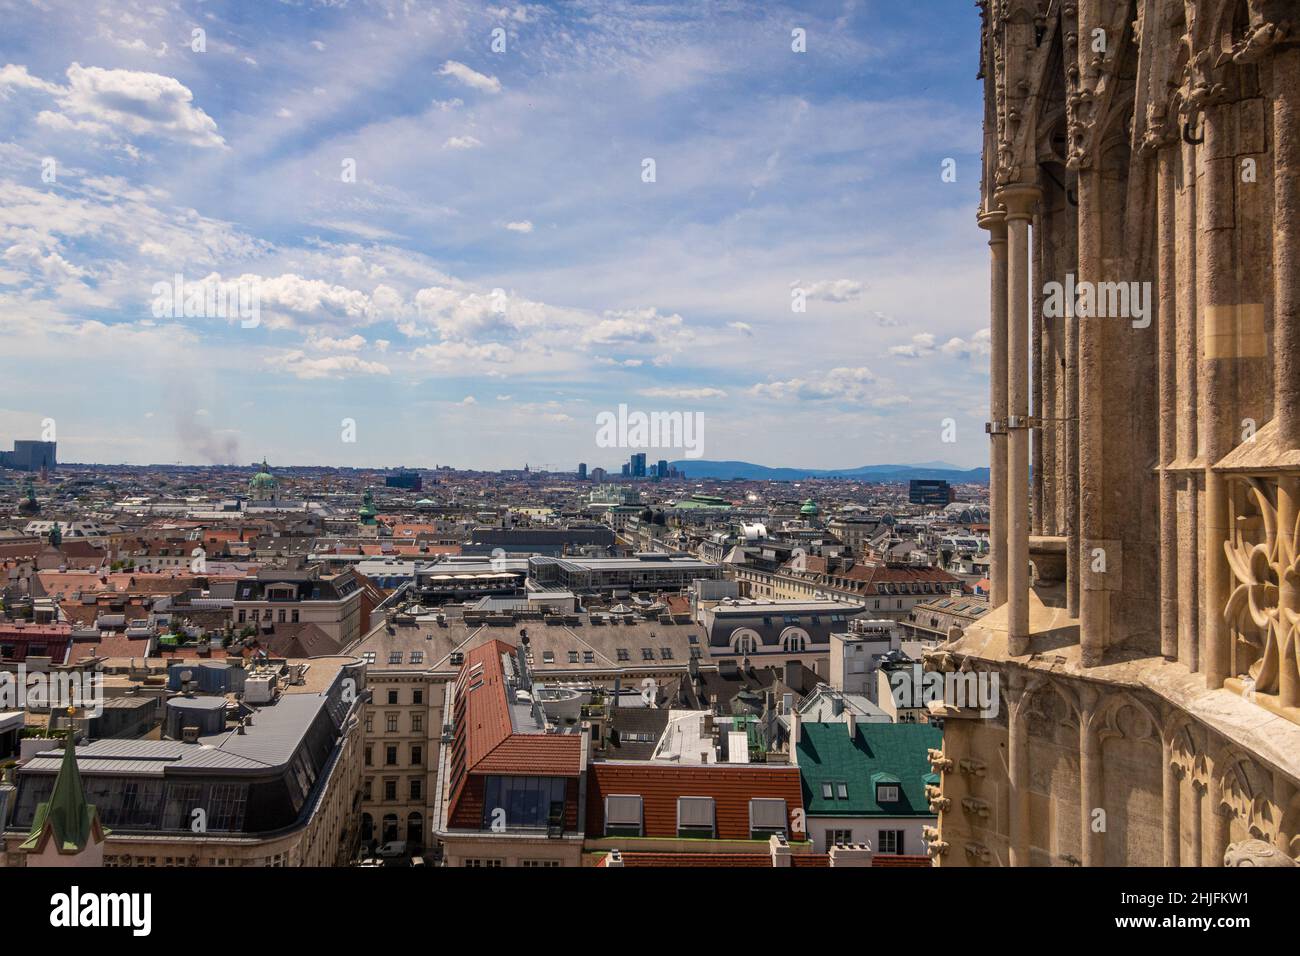 Vue sur Vienne depuis la cathédrale Saint-Étienne, Vienne, Autriche Banque D'Images